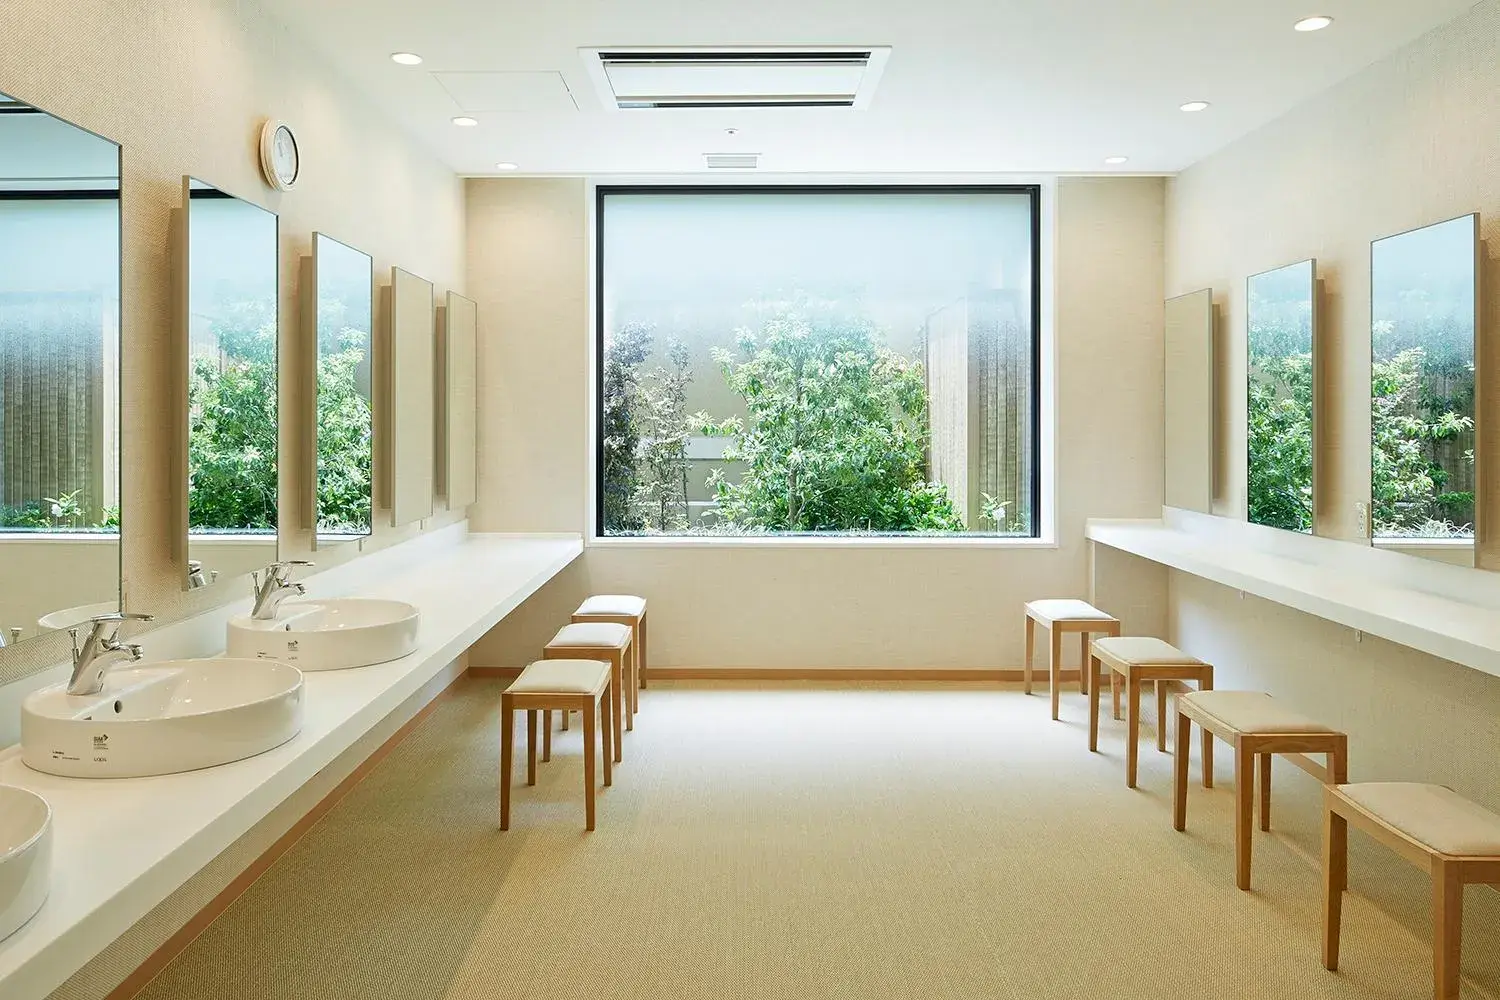 Hot Spring Bath, Bathroom in Mitsui Garden Hotel Kashiwa-No-Ha